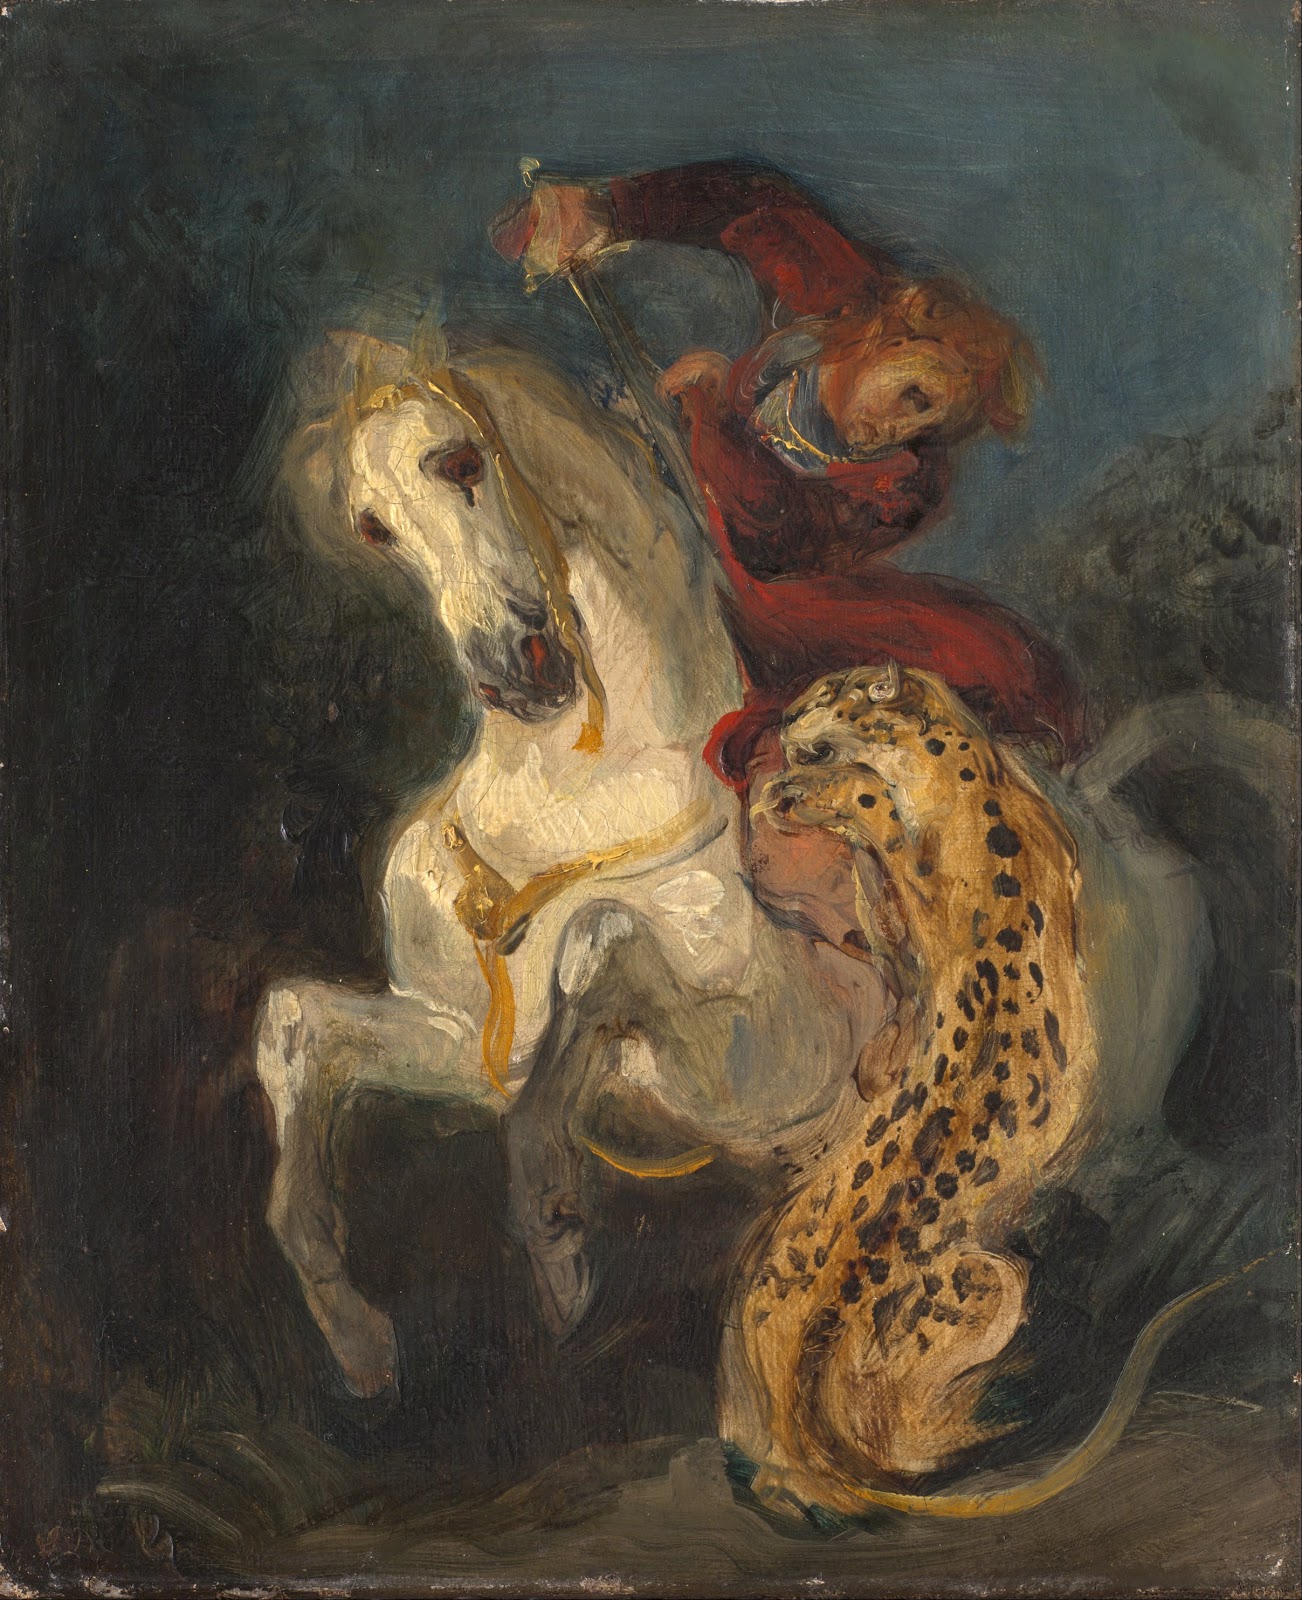 Eugene+Delacroix-1798-1863 (193).jpg